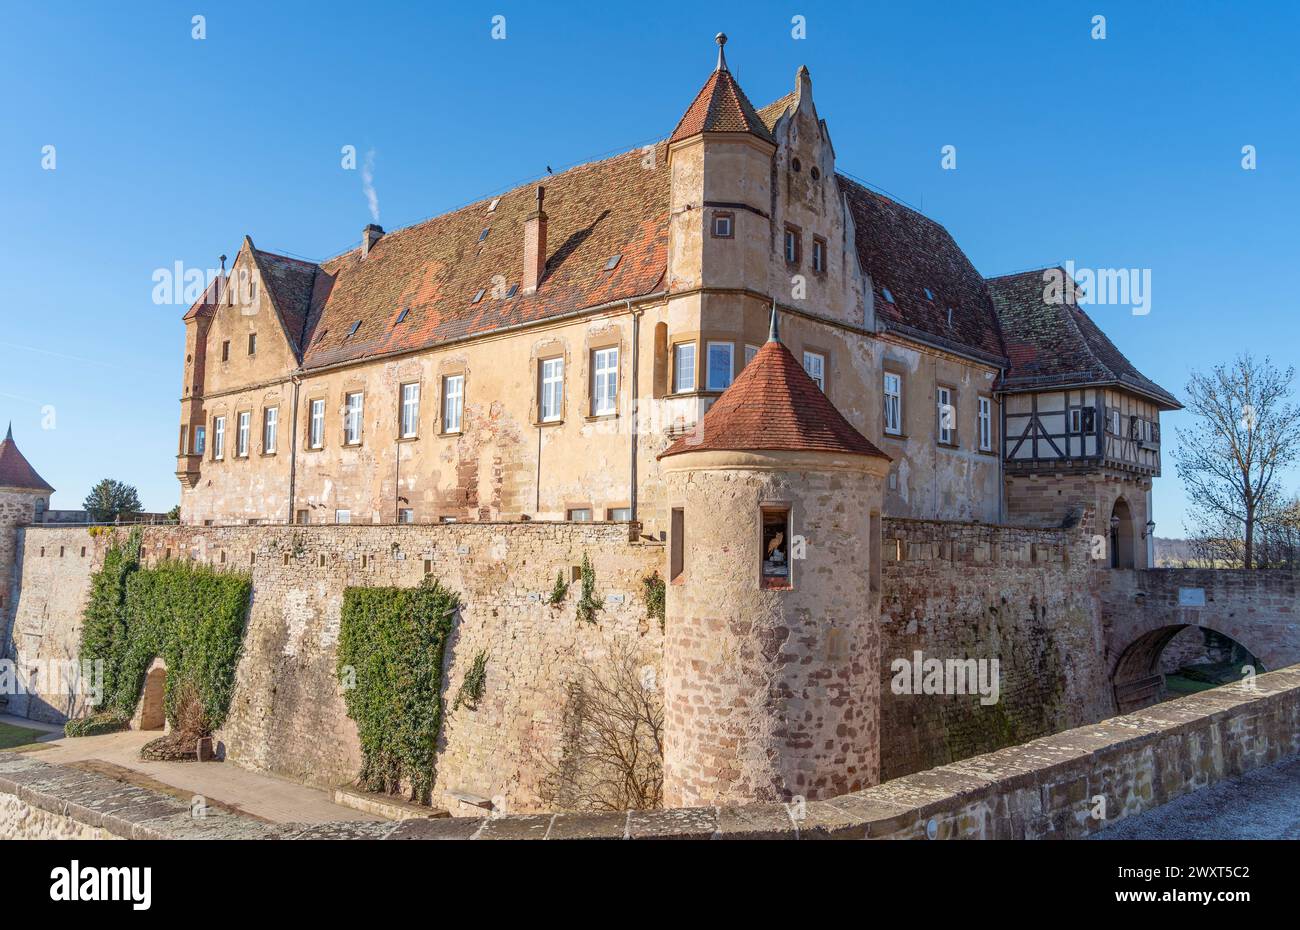 Paesaggio intorno al castello di Stettenfels, un castello medievale sopra Untergruppenbach vicino a Heilbronn, nella Germania meridionale all'inizio della primavera Foto Stock